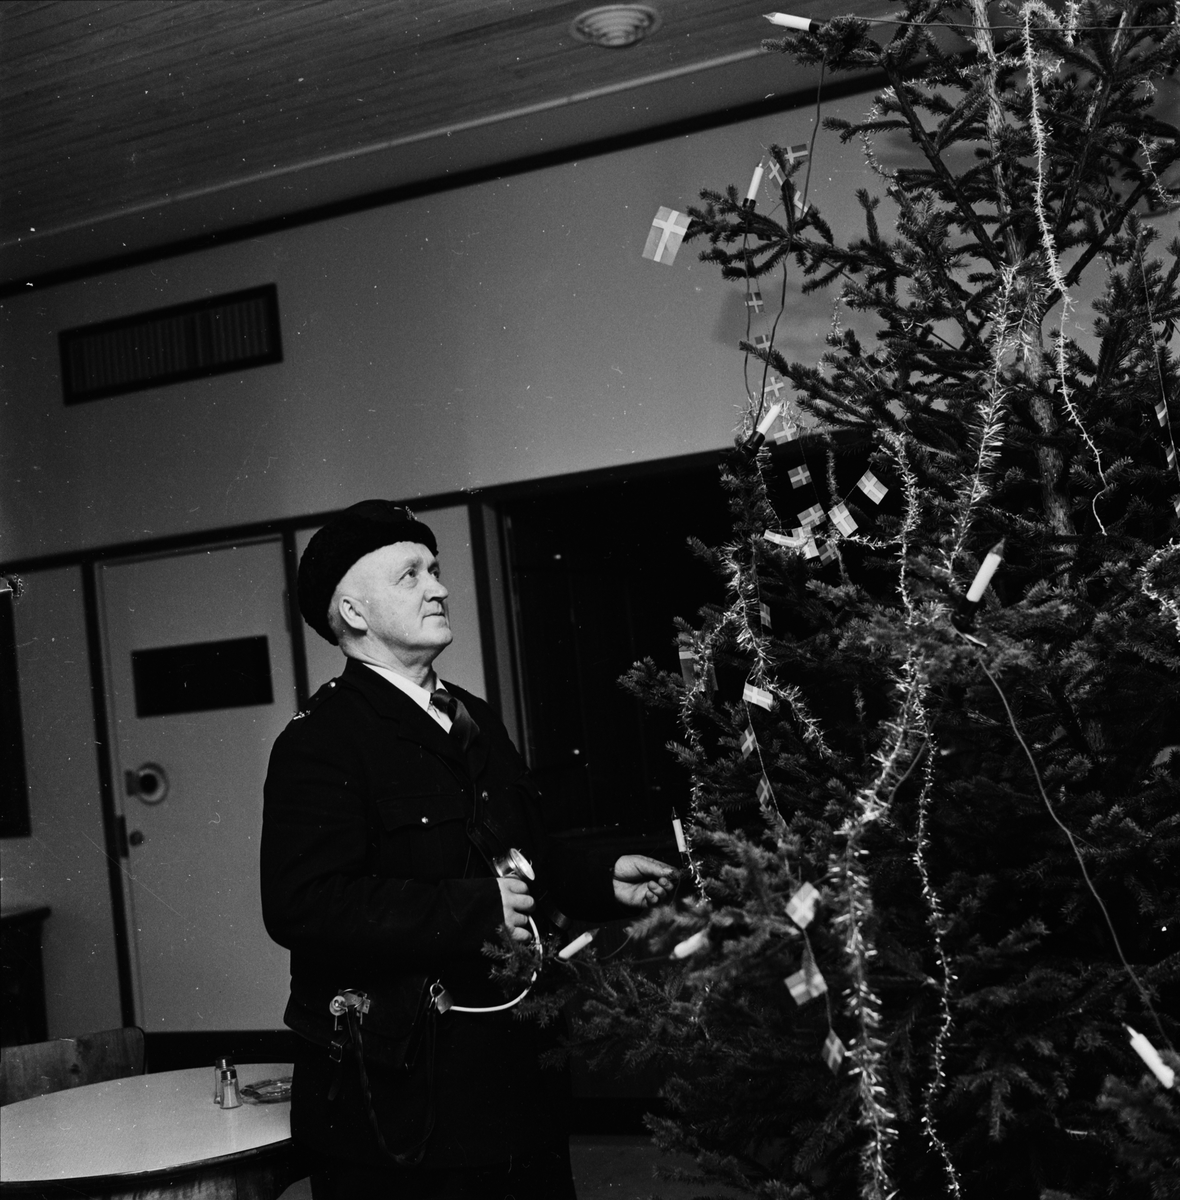 "Jul på polisstationen", Uppsala 1960